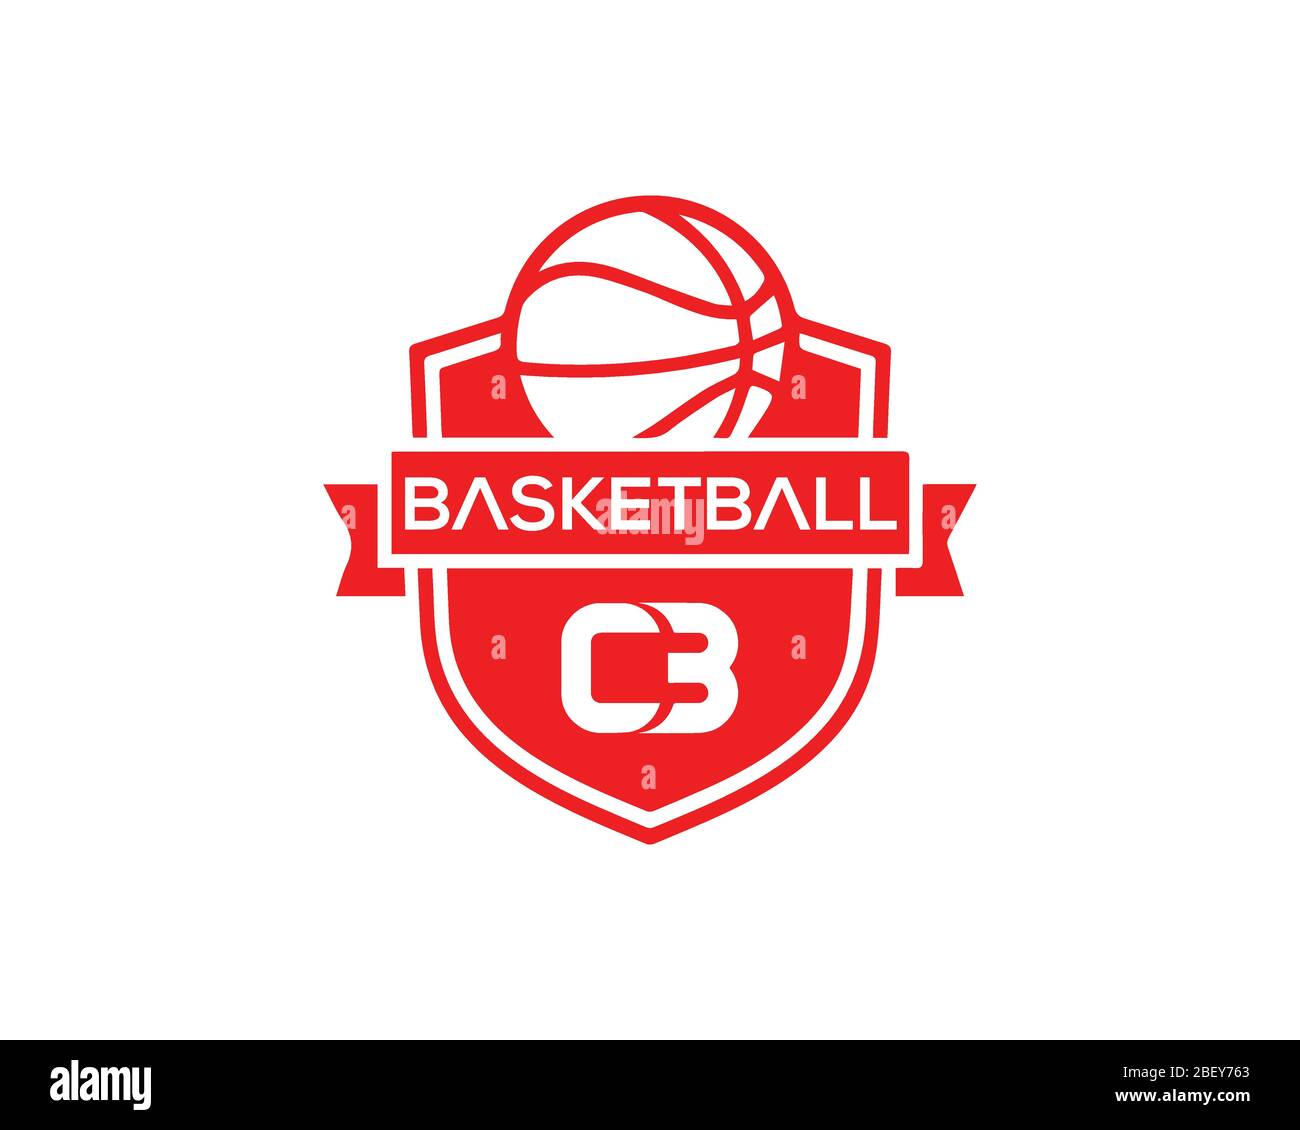 C3 Basketball logo design Stock Vector